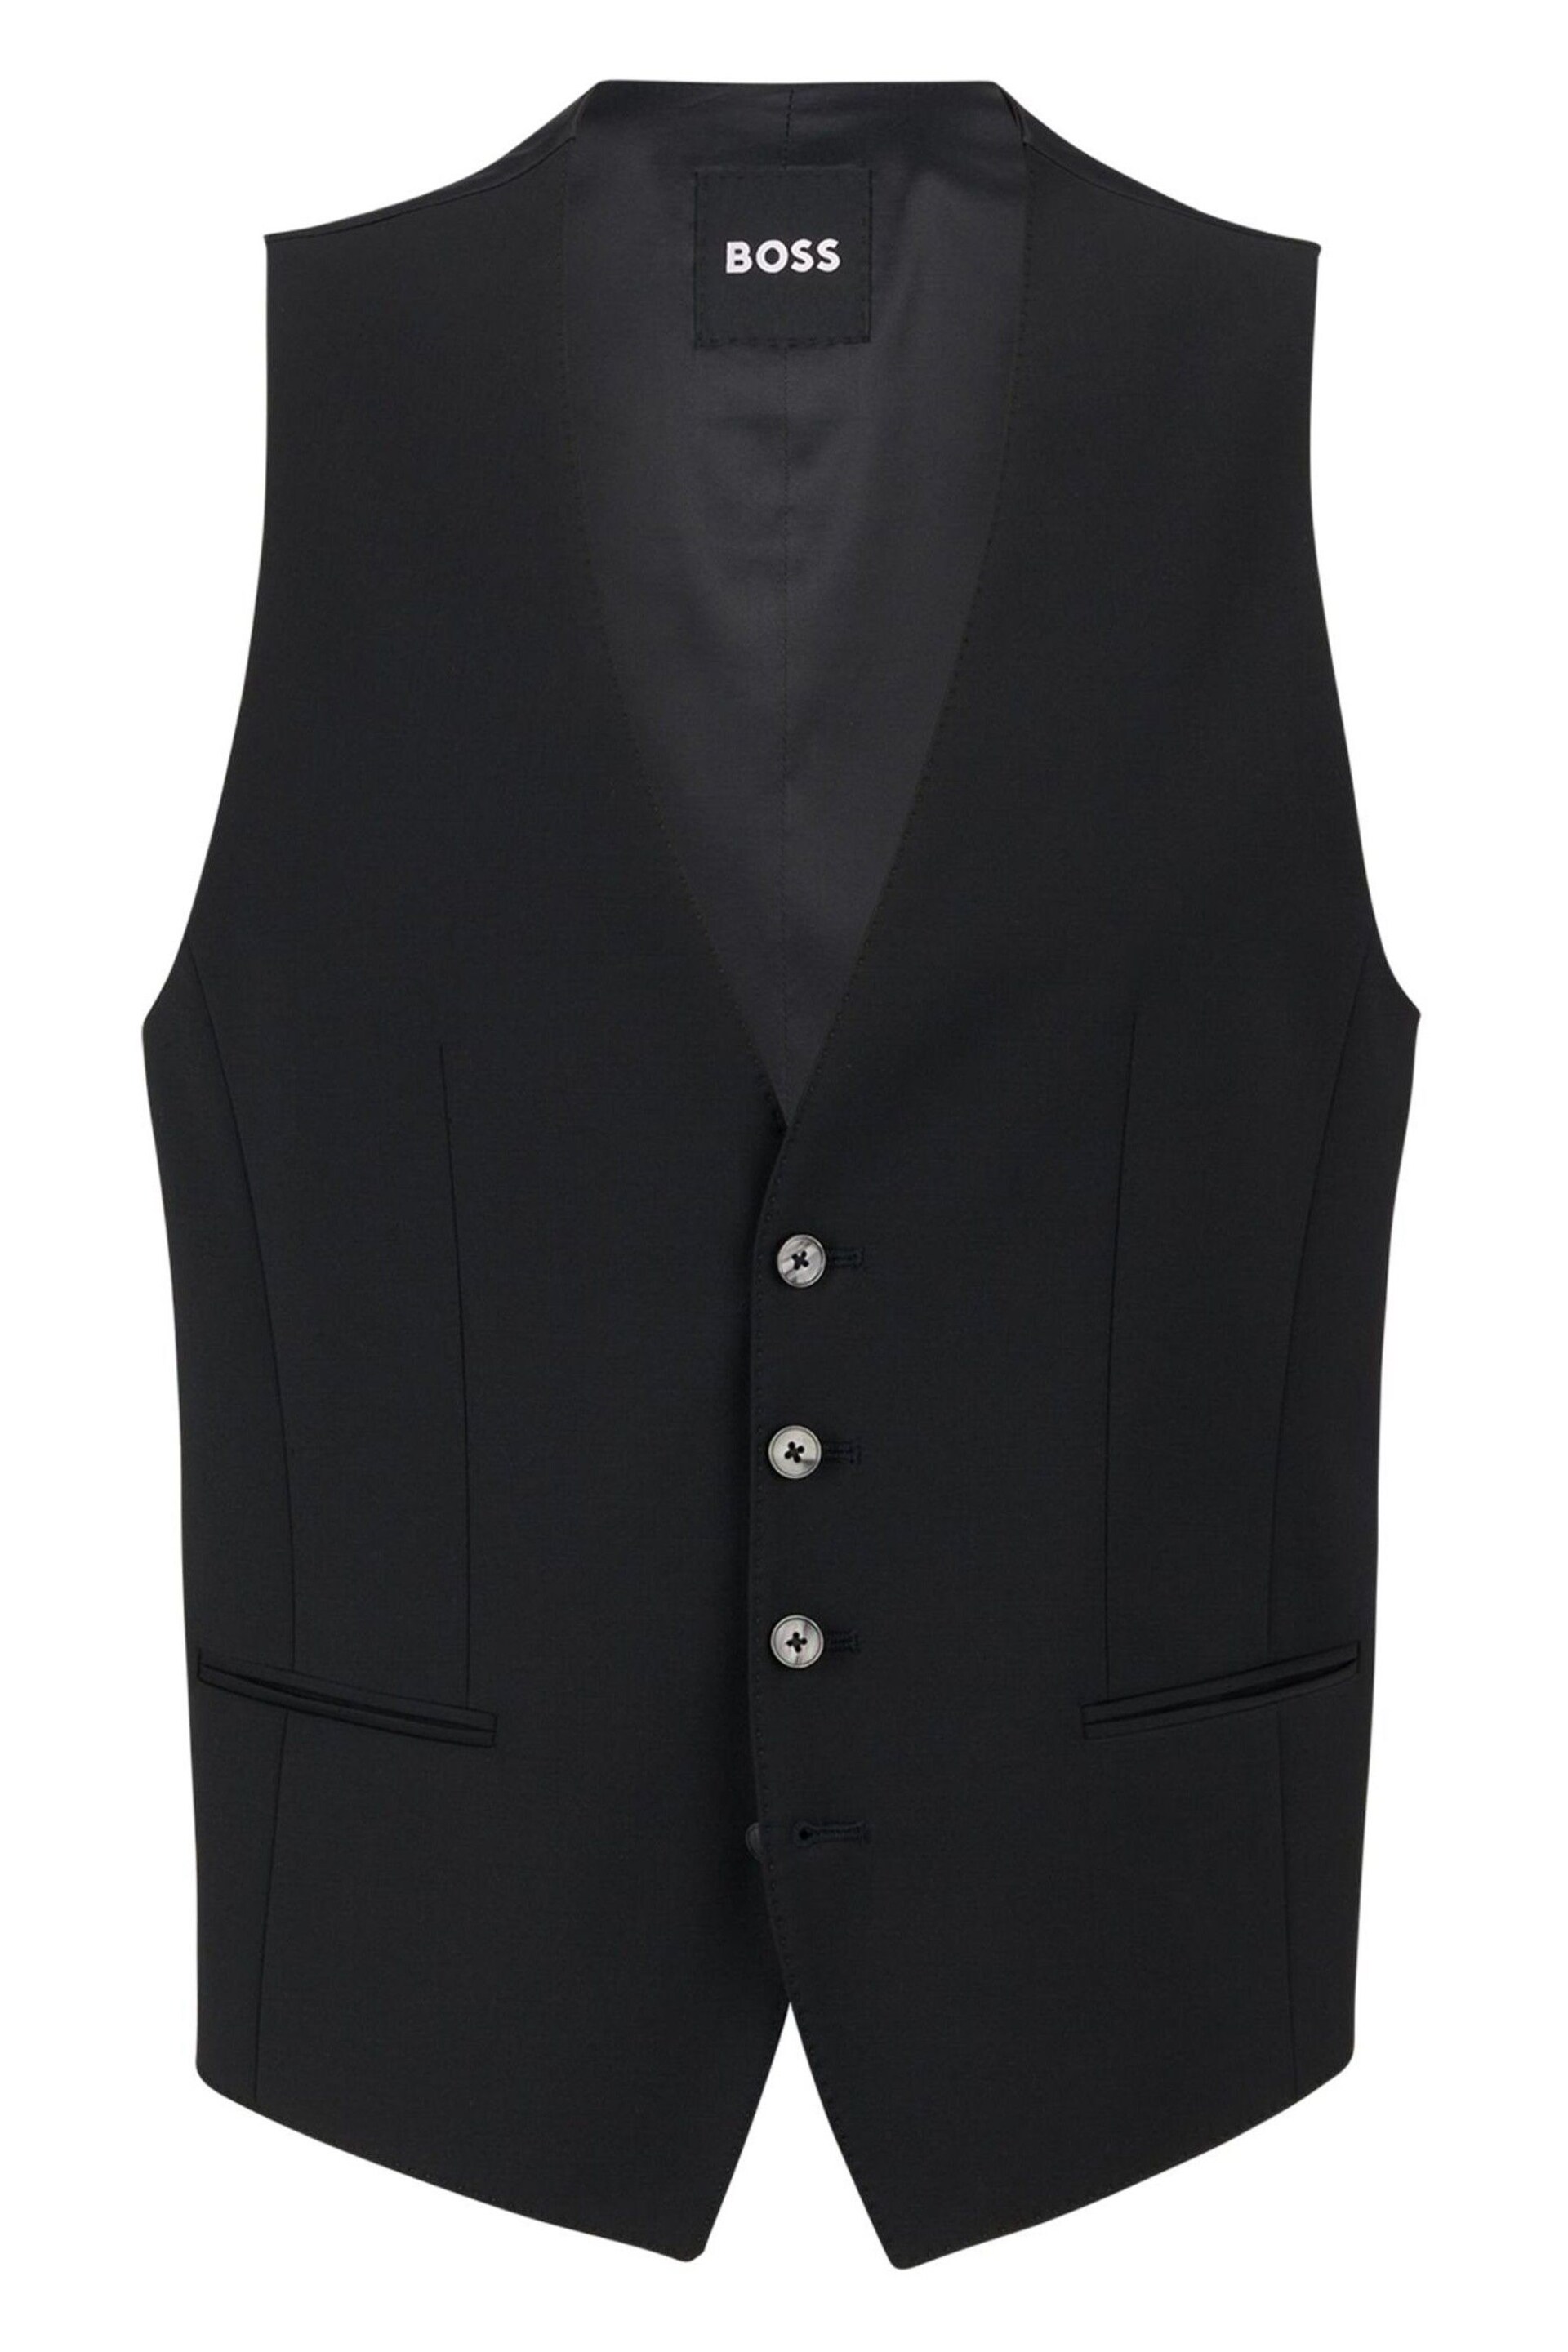 BOSS Black Slim Fit Wool Blend Waistcoat - Image 5 of 5